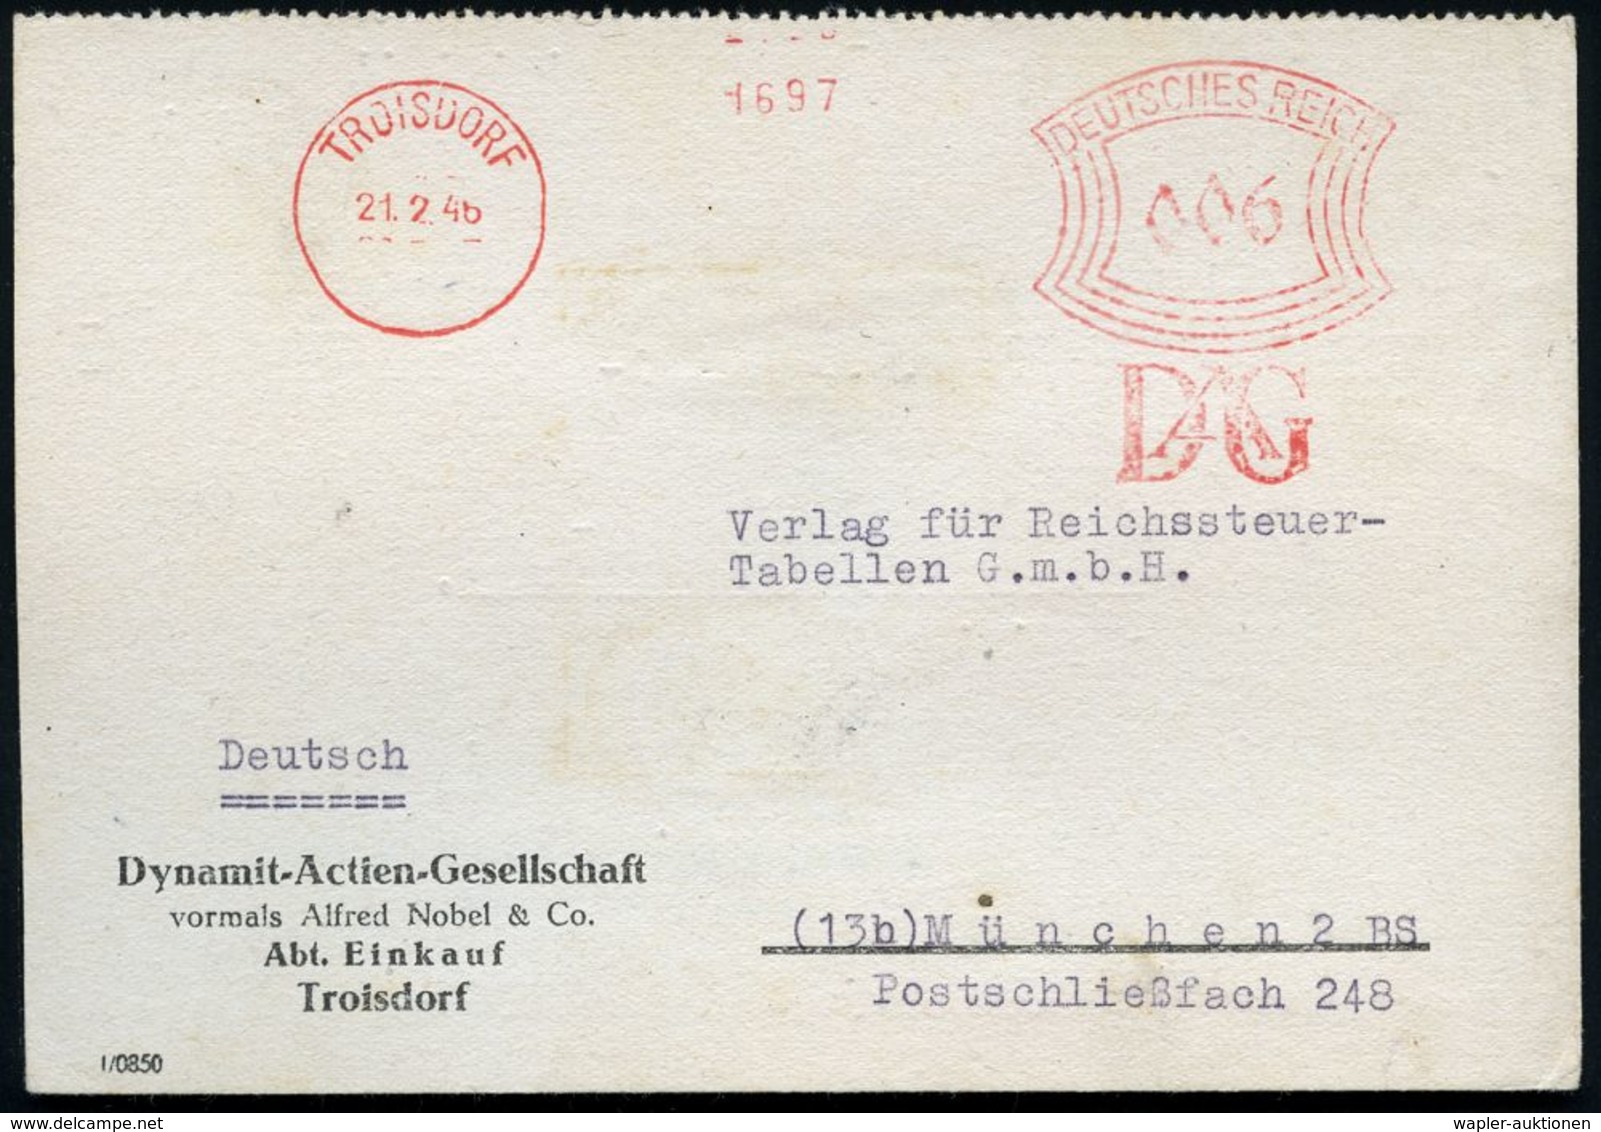 NOBELPREIS / NOBELPREISTRÄGER : TROISDORF/ DAG 1946 (21.2.) Seltener, Unverändert Weiterverwendeter AFS "Bogenrechteck"  - Nobelpreisträger